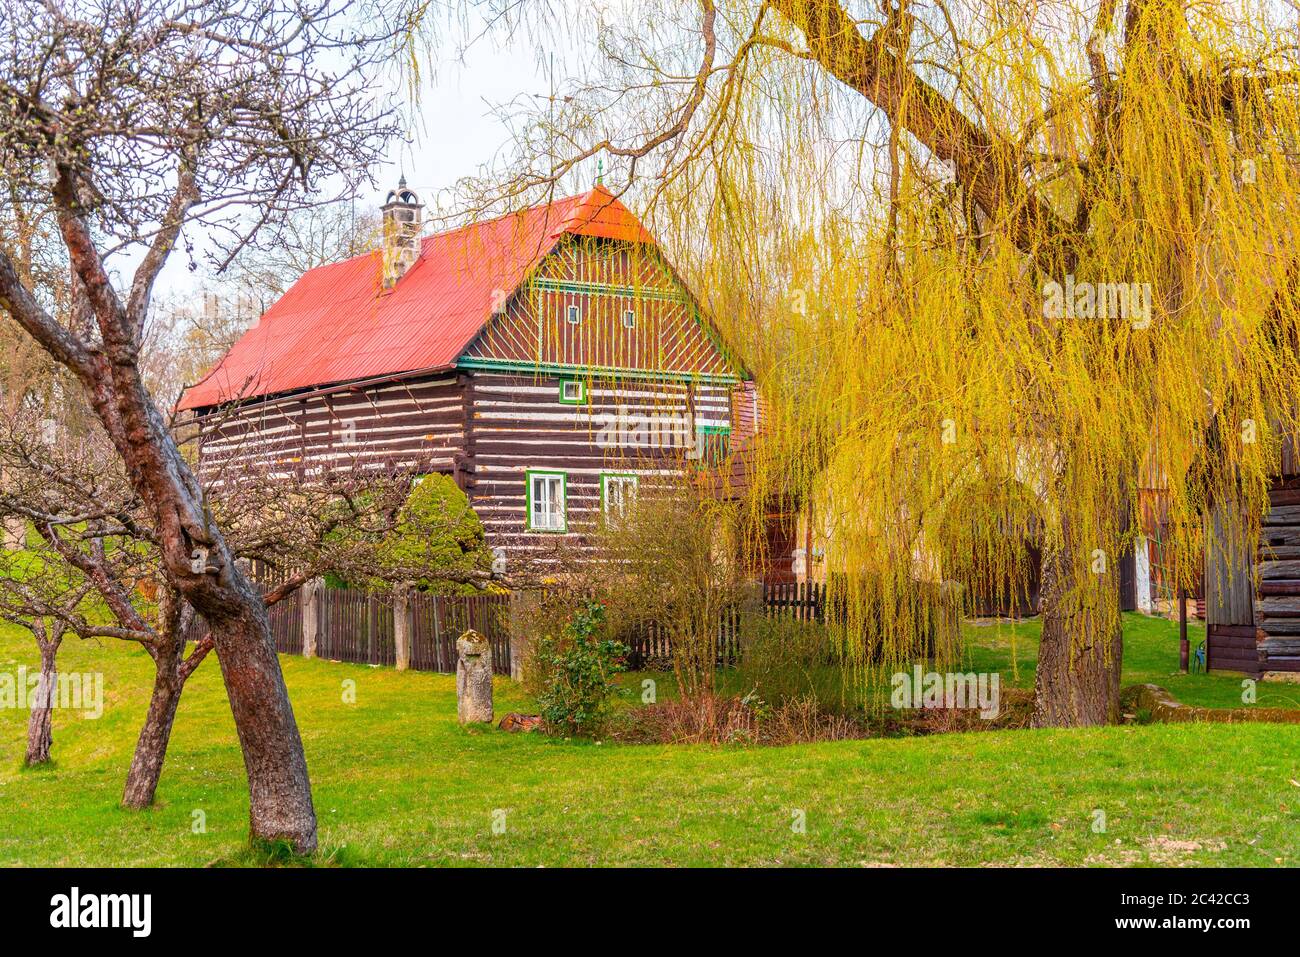 Kopic Farmhouse, Tchèque: Kopicuv statek. Maison rurale traditionnelle dans le Paradis tchèque. Banque D'Images